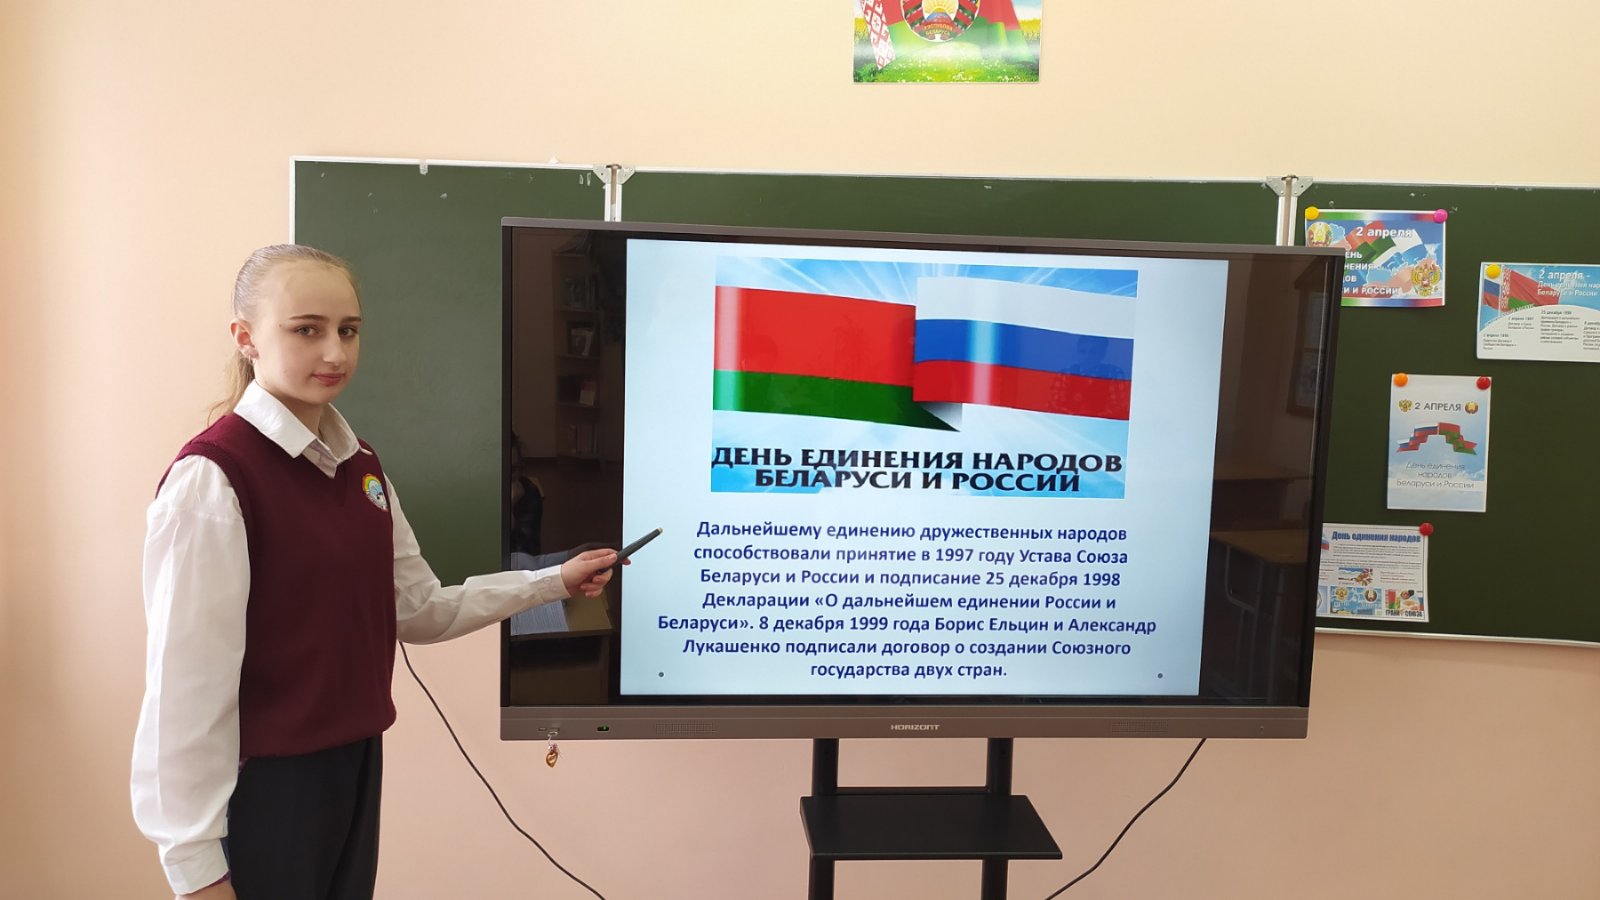 Рисунок день единения народов беларуси и россии